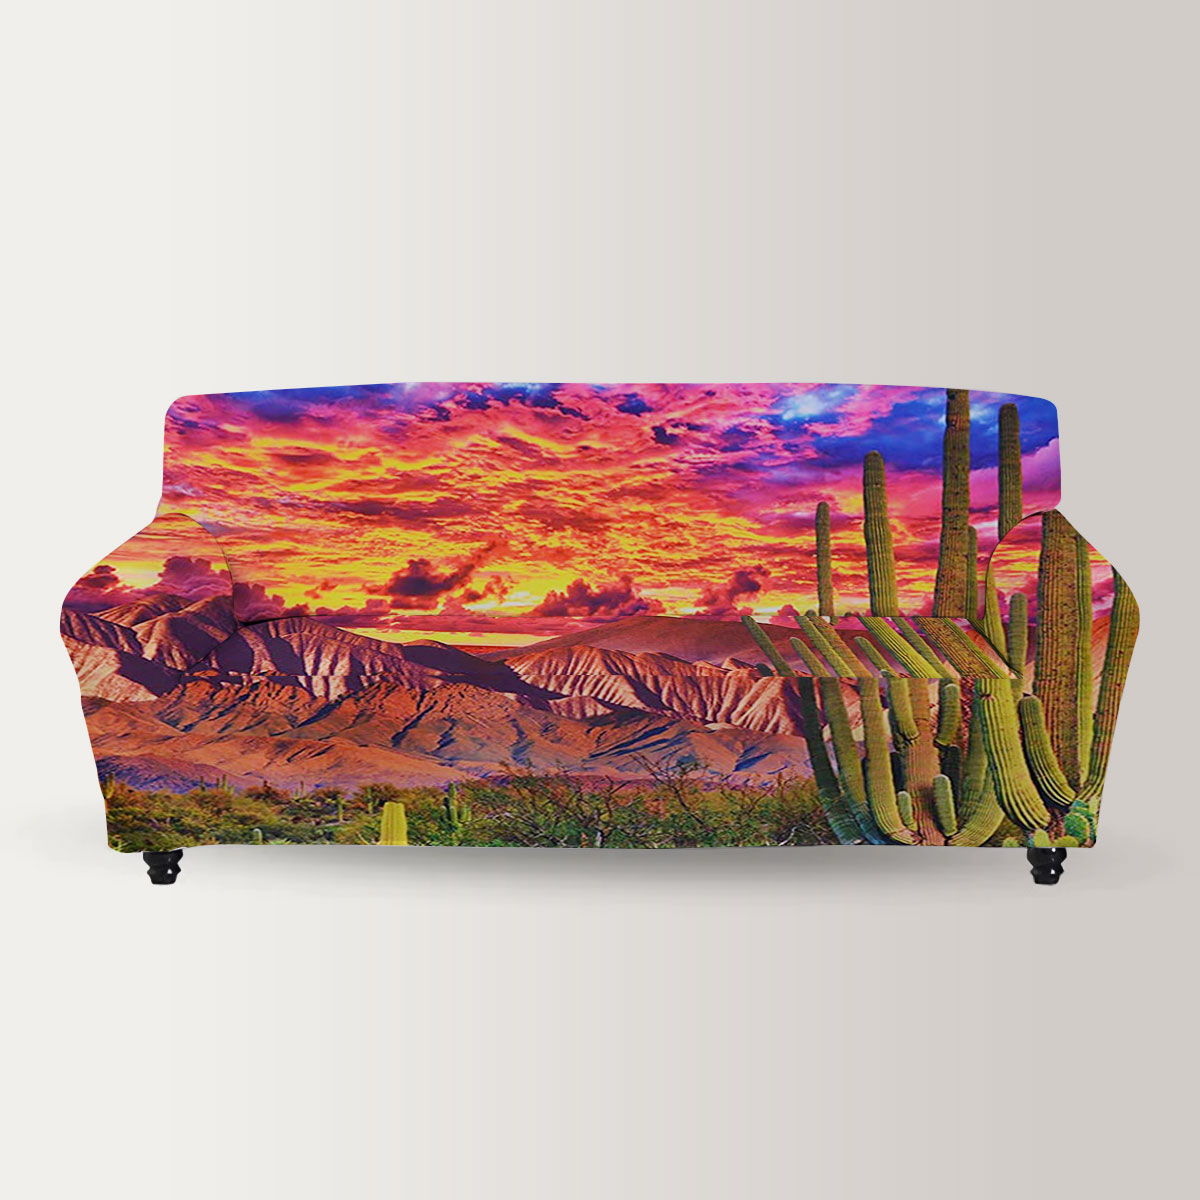 Sunset Desert Sofa Cover